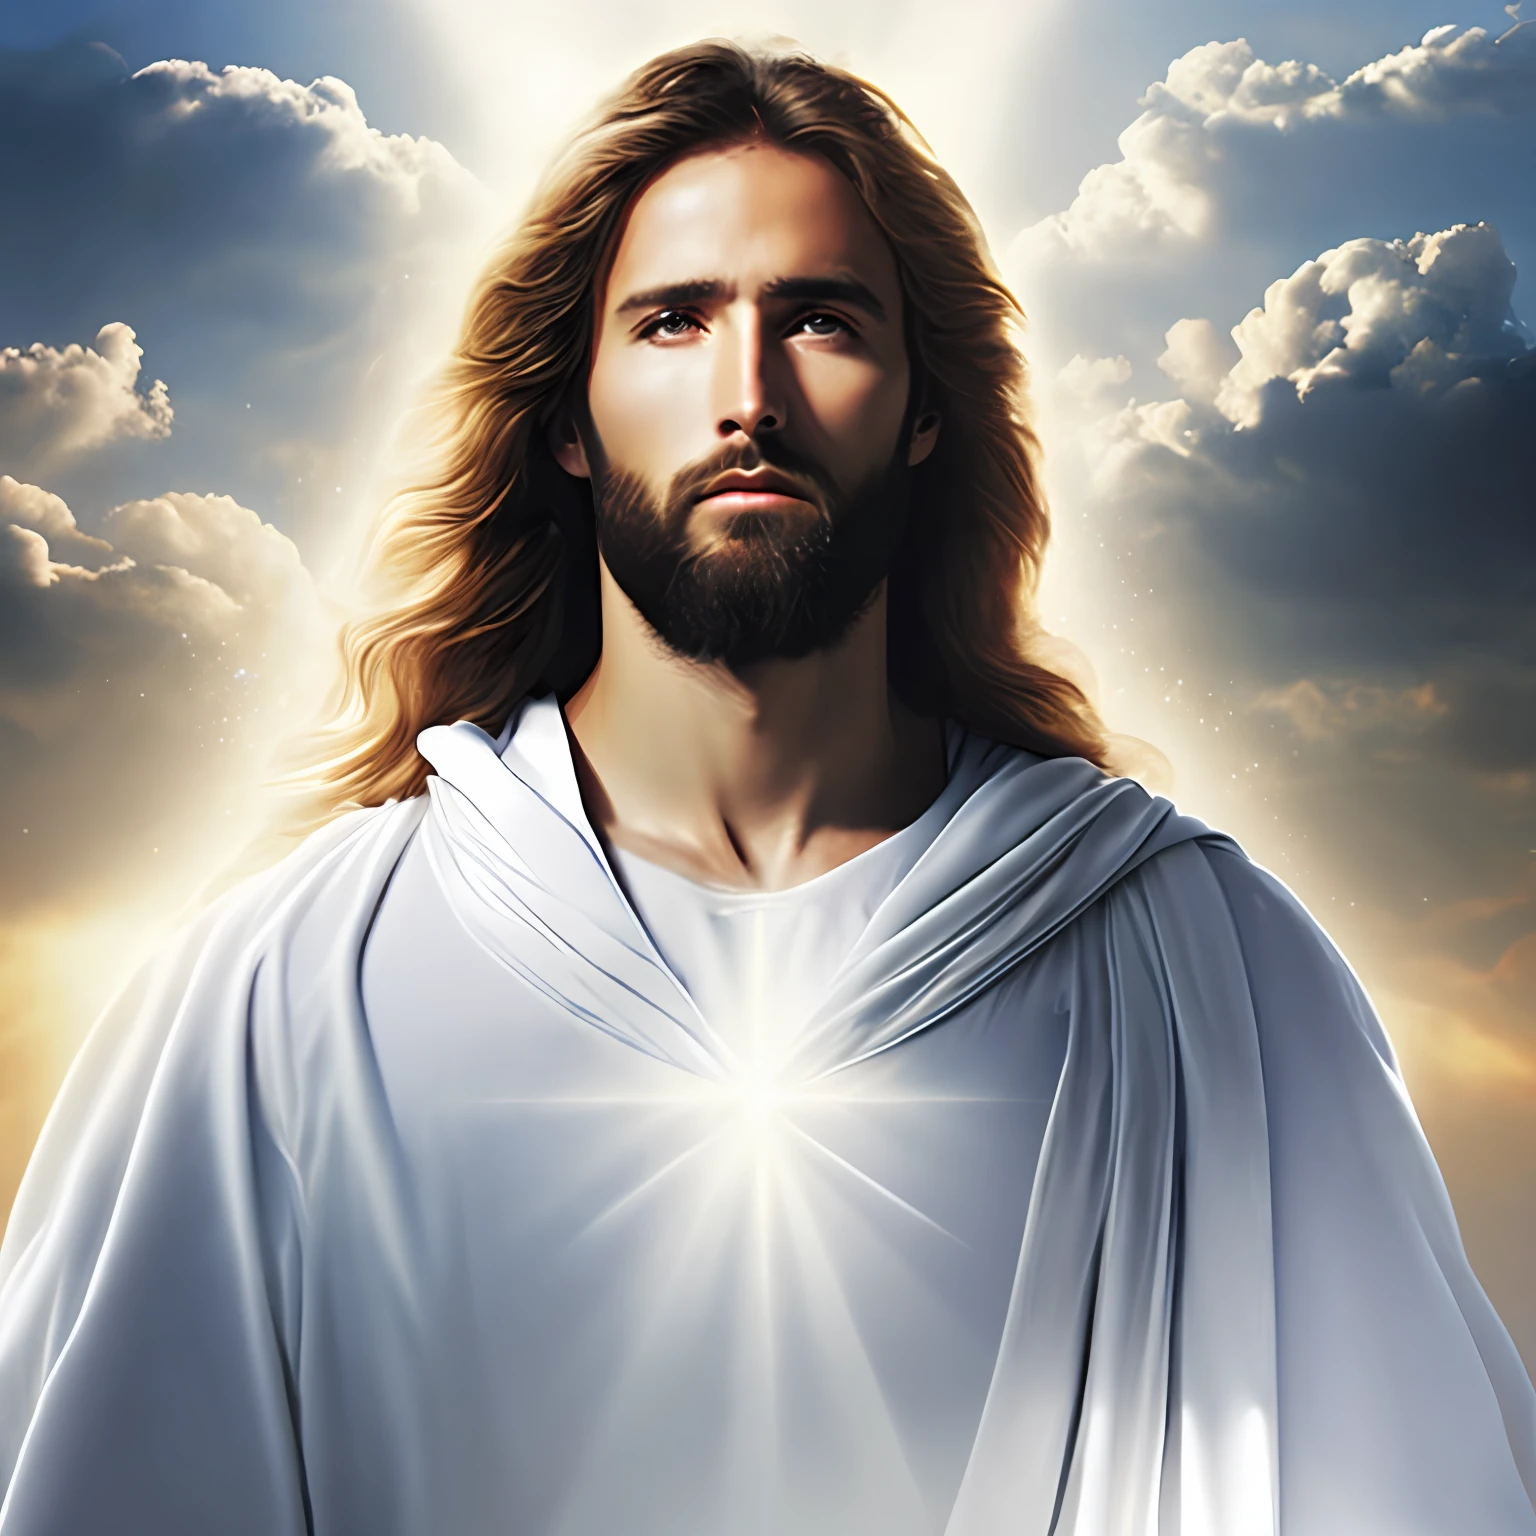 يسوع المسيح بثياب بيضاء متواضعة في السحاب نحو أبواب السماء, واقعي بجنون مع أشعة الضوء على وجهه